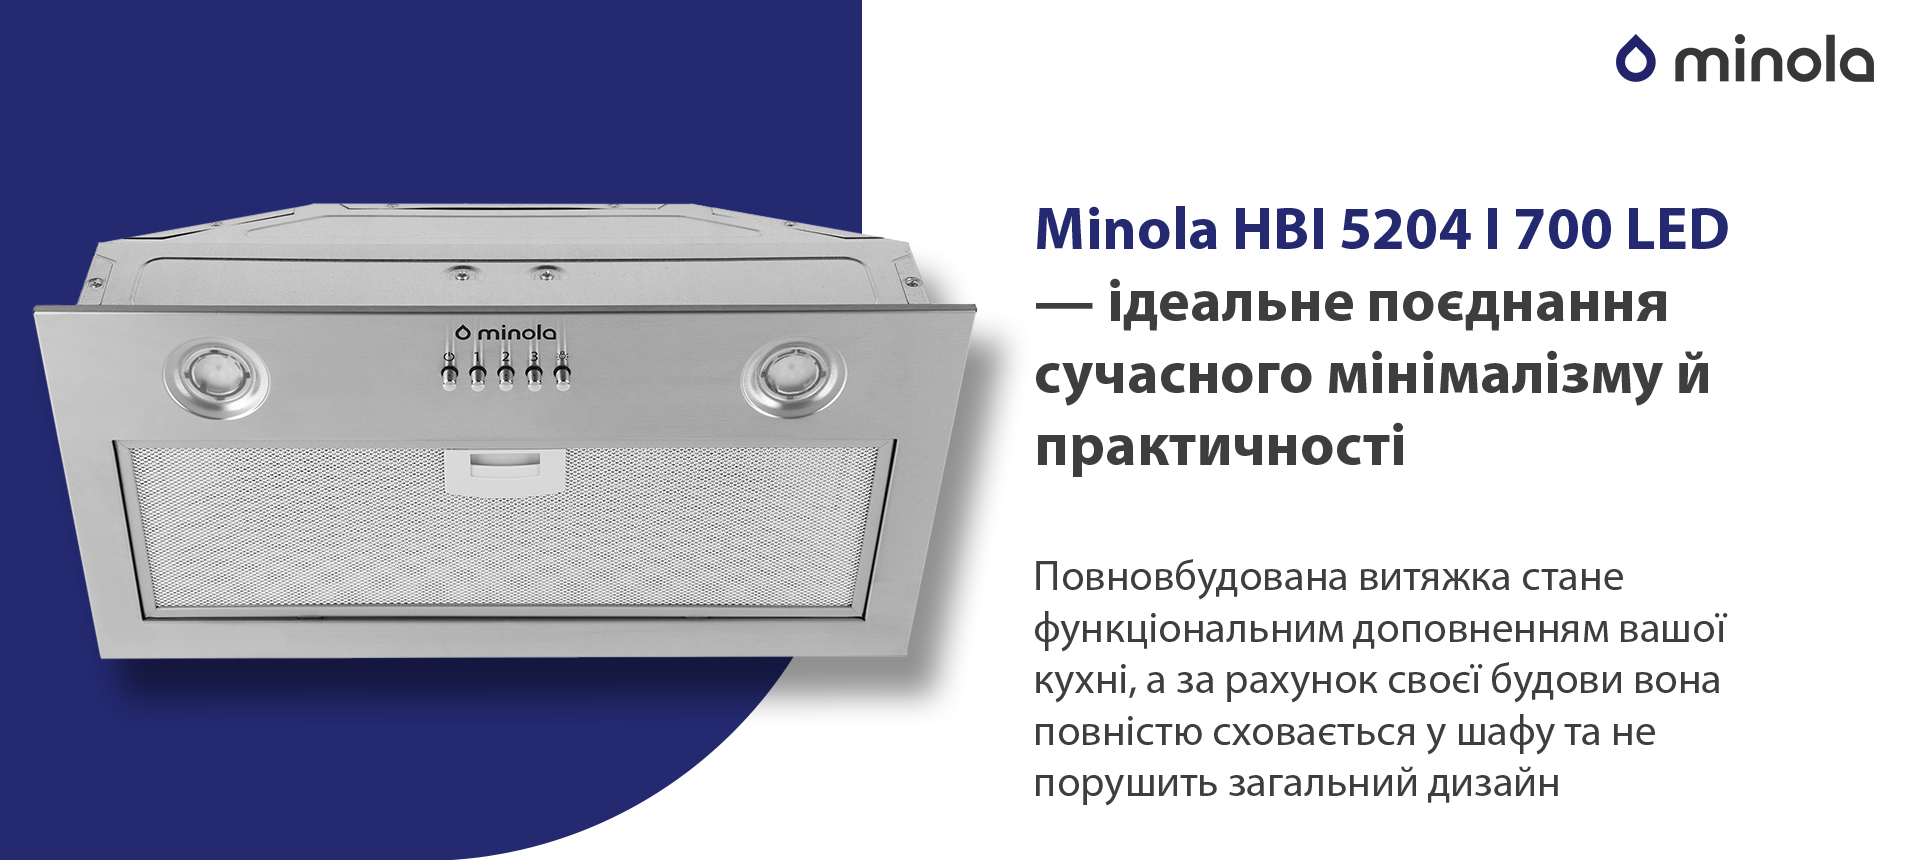 Minola HBI 5204 I 700 LED в магазине в Киеве - фото 10